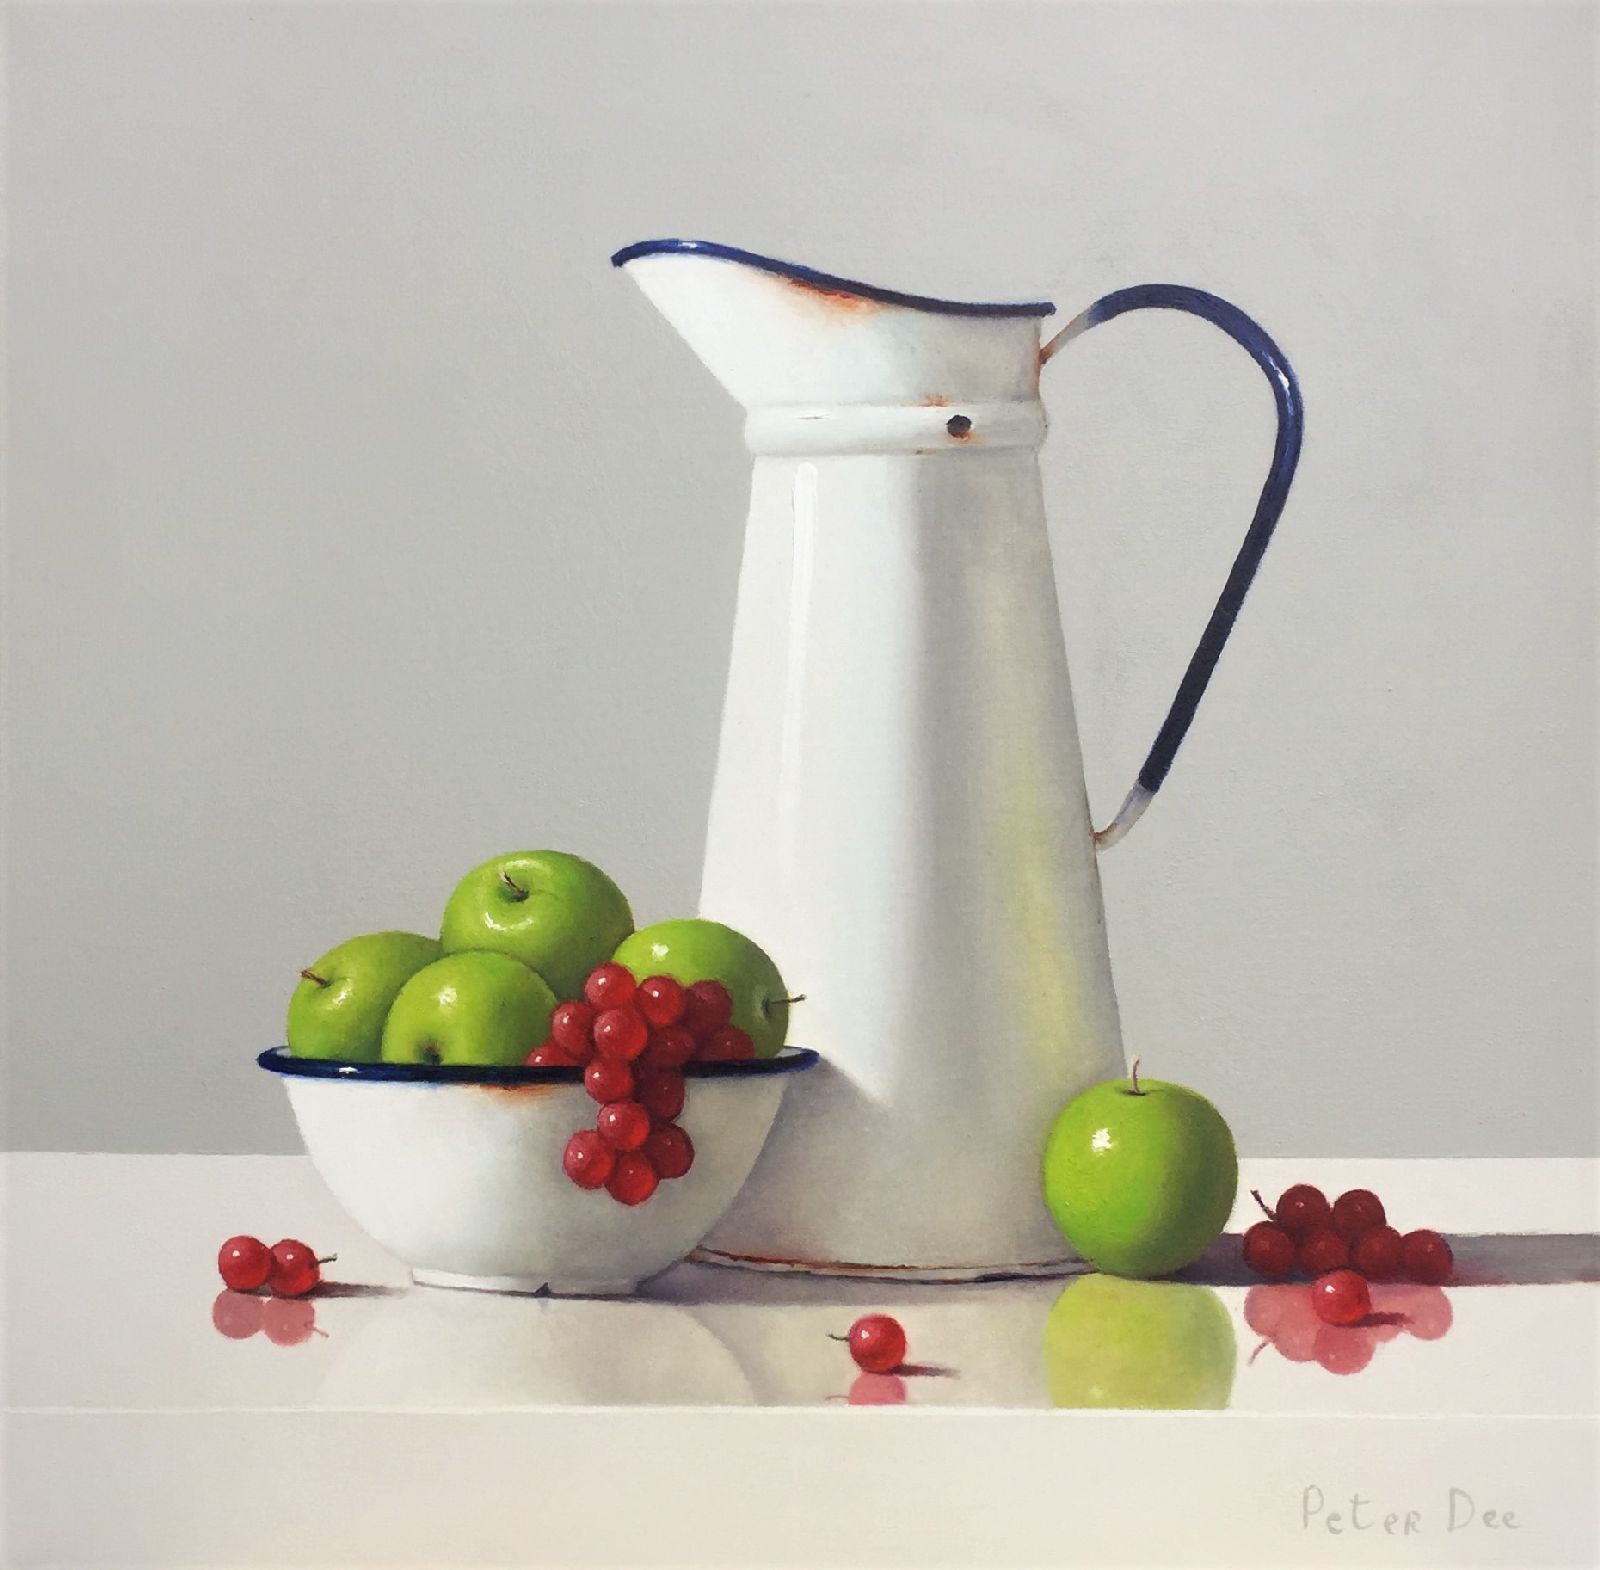 Peter Dee - Vintage Enamelware with Fruit